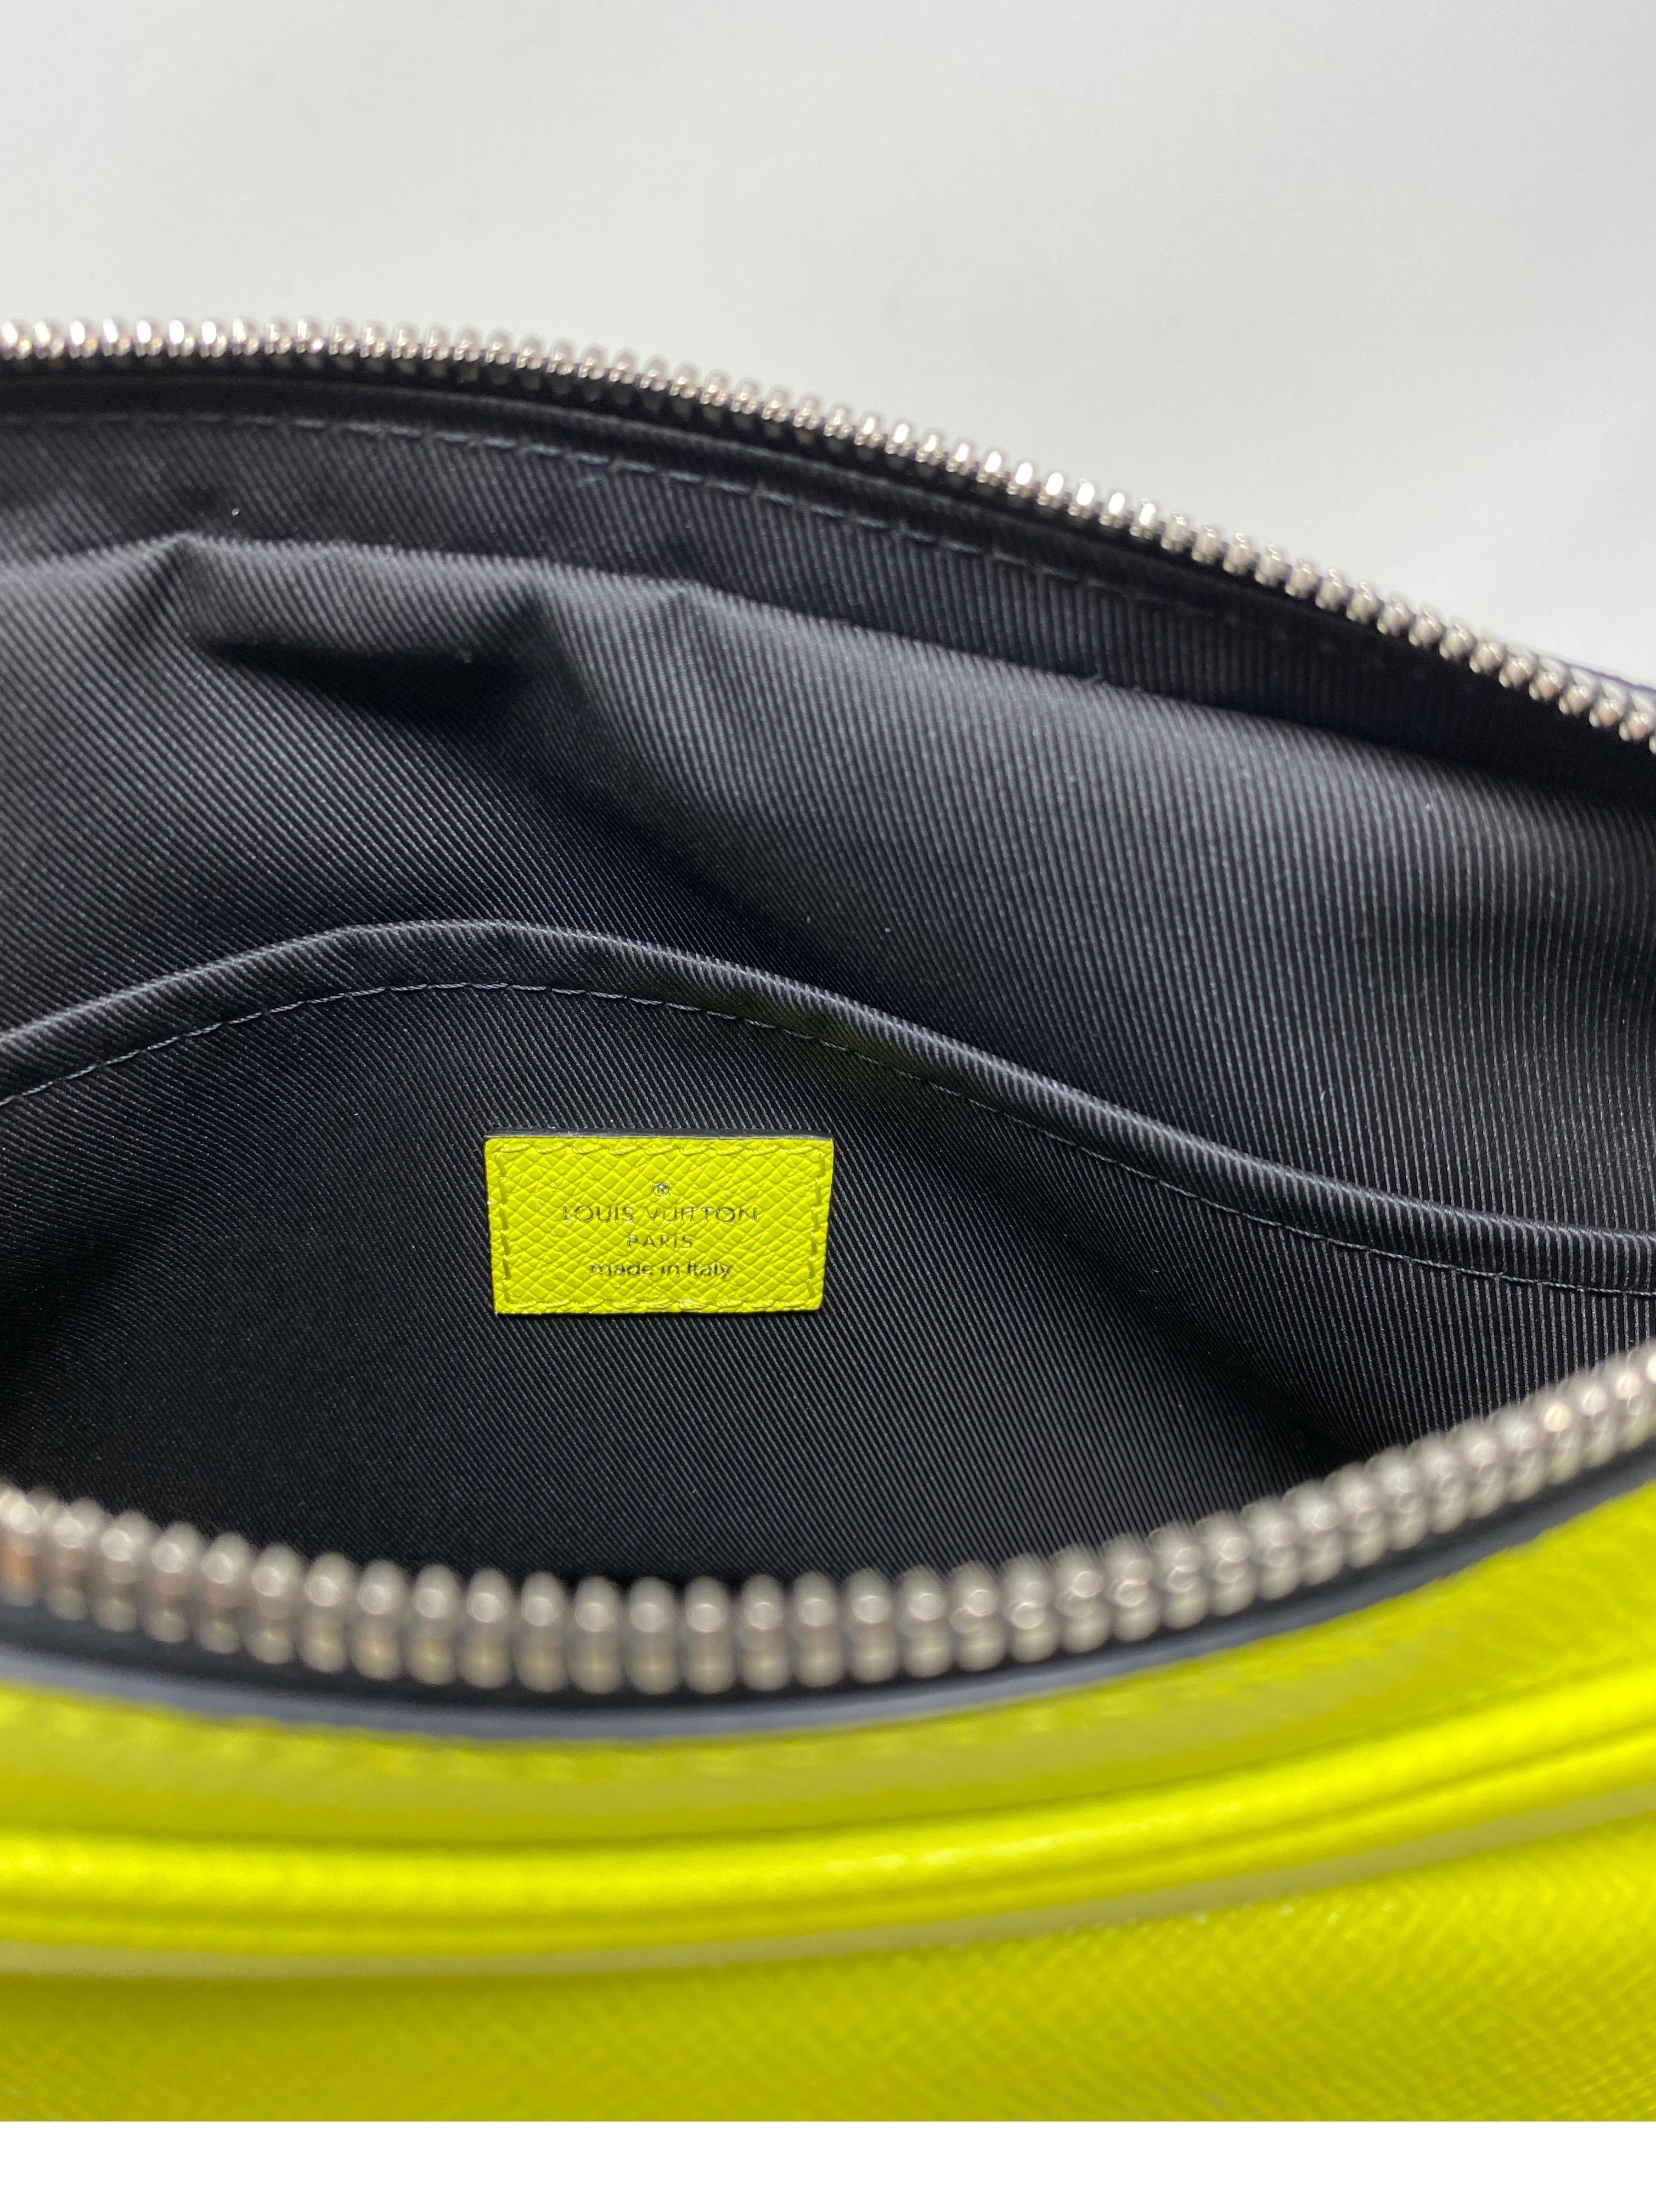 Louis Vuitton Yellow Taigarama Monogram Outdoor Bag 9